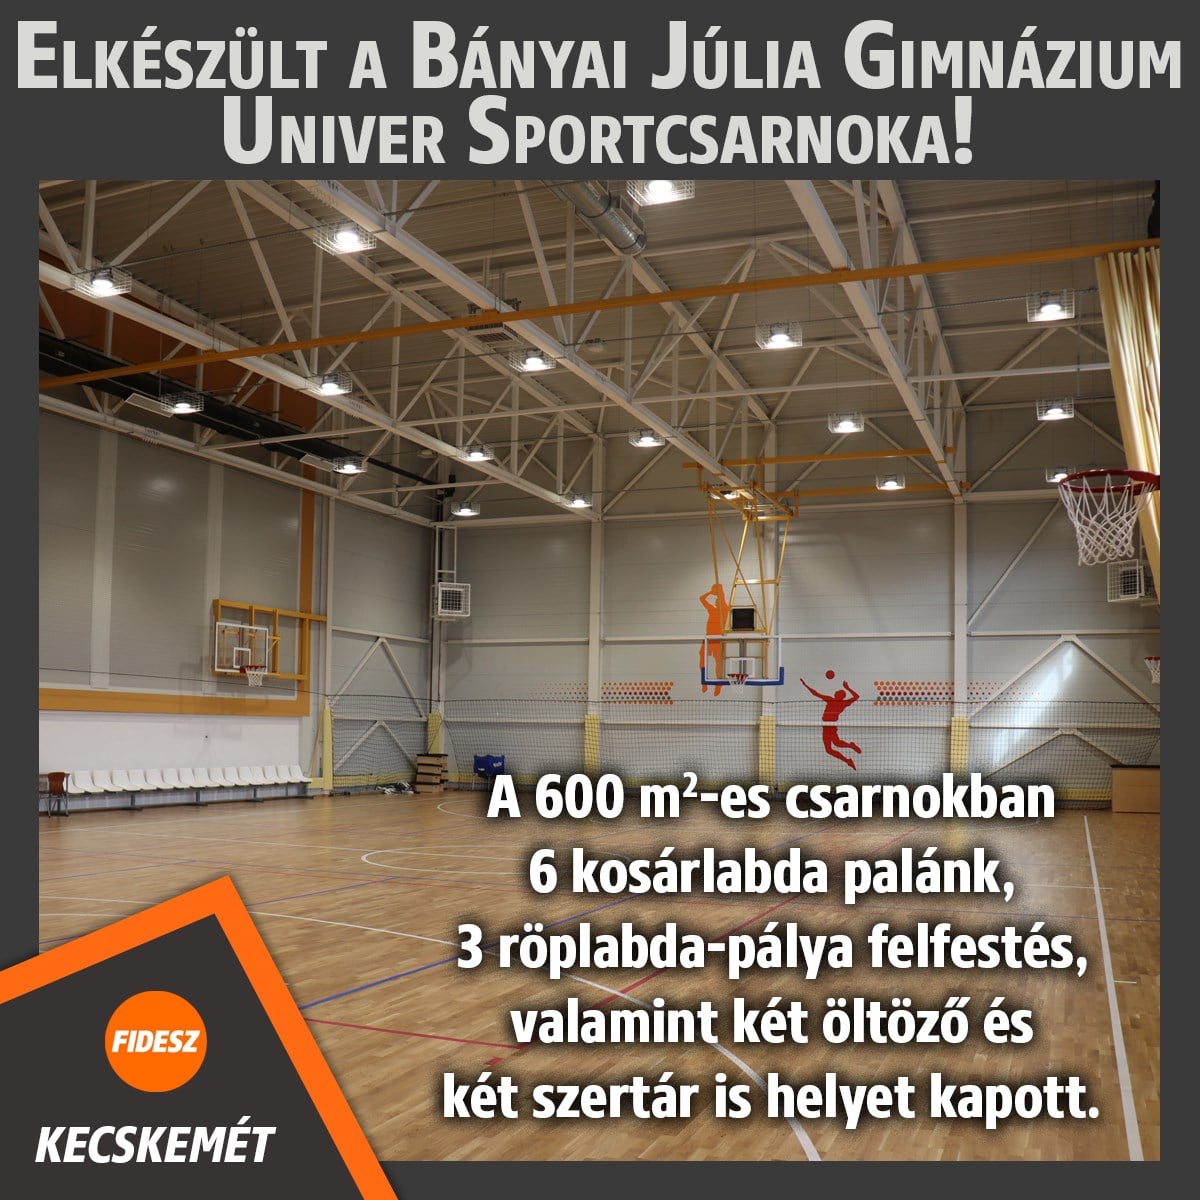 Elkészült a Bányai Júlia Gimnázium Univer Sportcsarnoka! A 600 négyzetméteres csarnokban 6 kosárlabda palánk, 3 röplabda-pálya felfestés, valamint két öltöző és két szertár is helyet kapott.